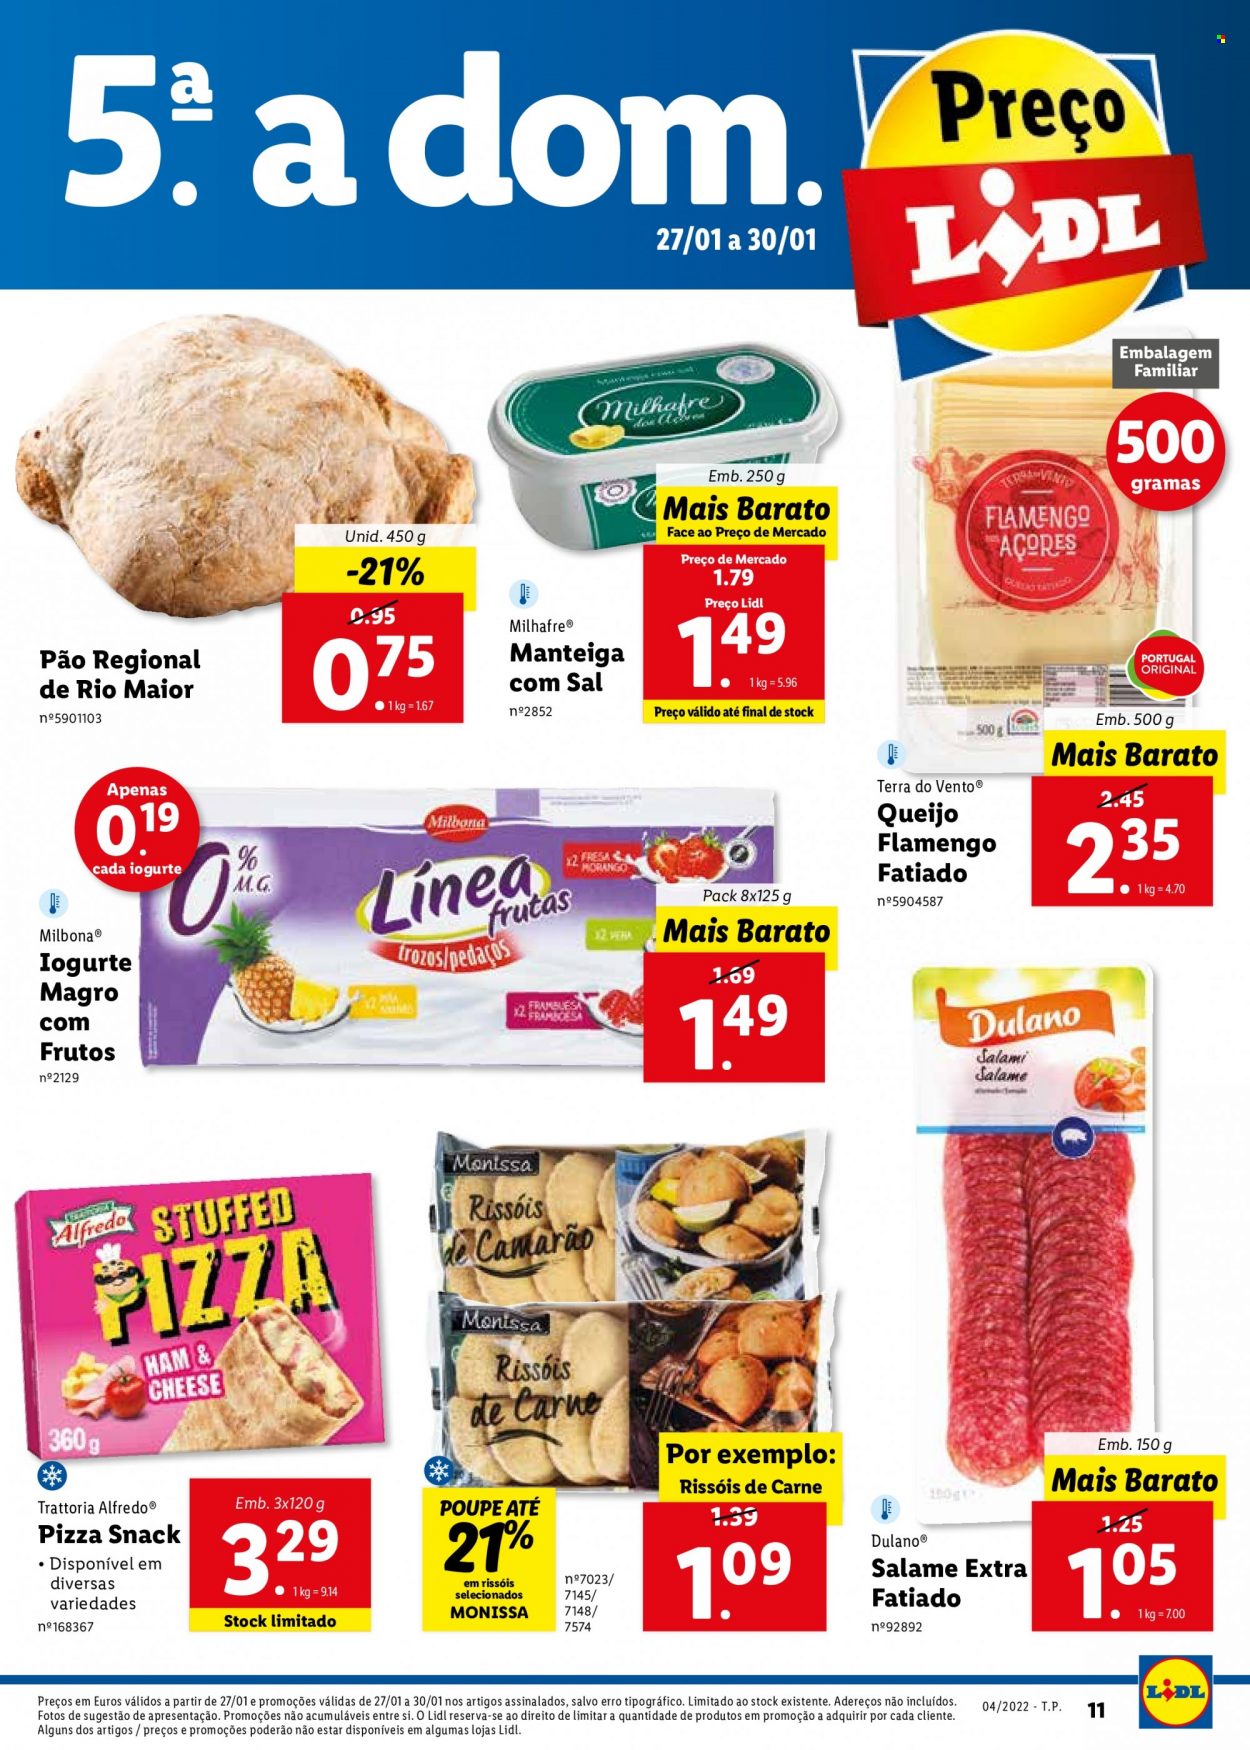 thumbnail - Folheto Lidl - 24.1.2022 - 30.1.2022 - Produtos em promoção - pão, pizza, rissois, queijo, queijo flamengo, iogurte, manteiga, manteiga com sal. Página 33.